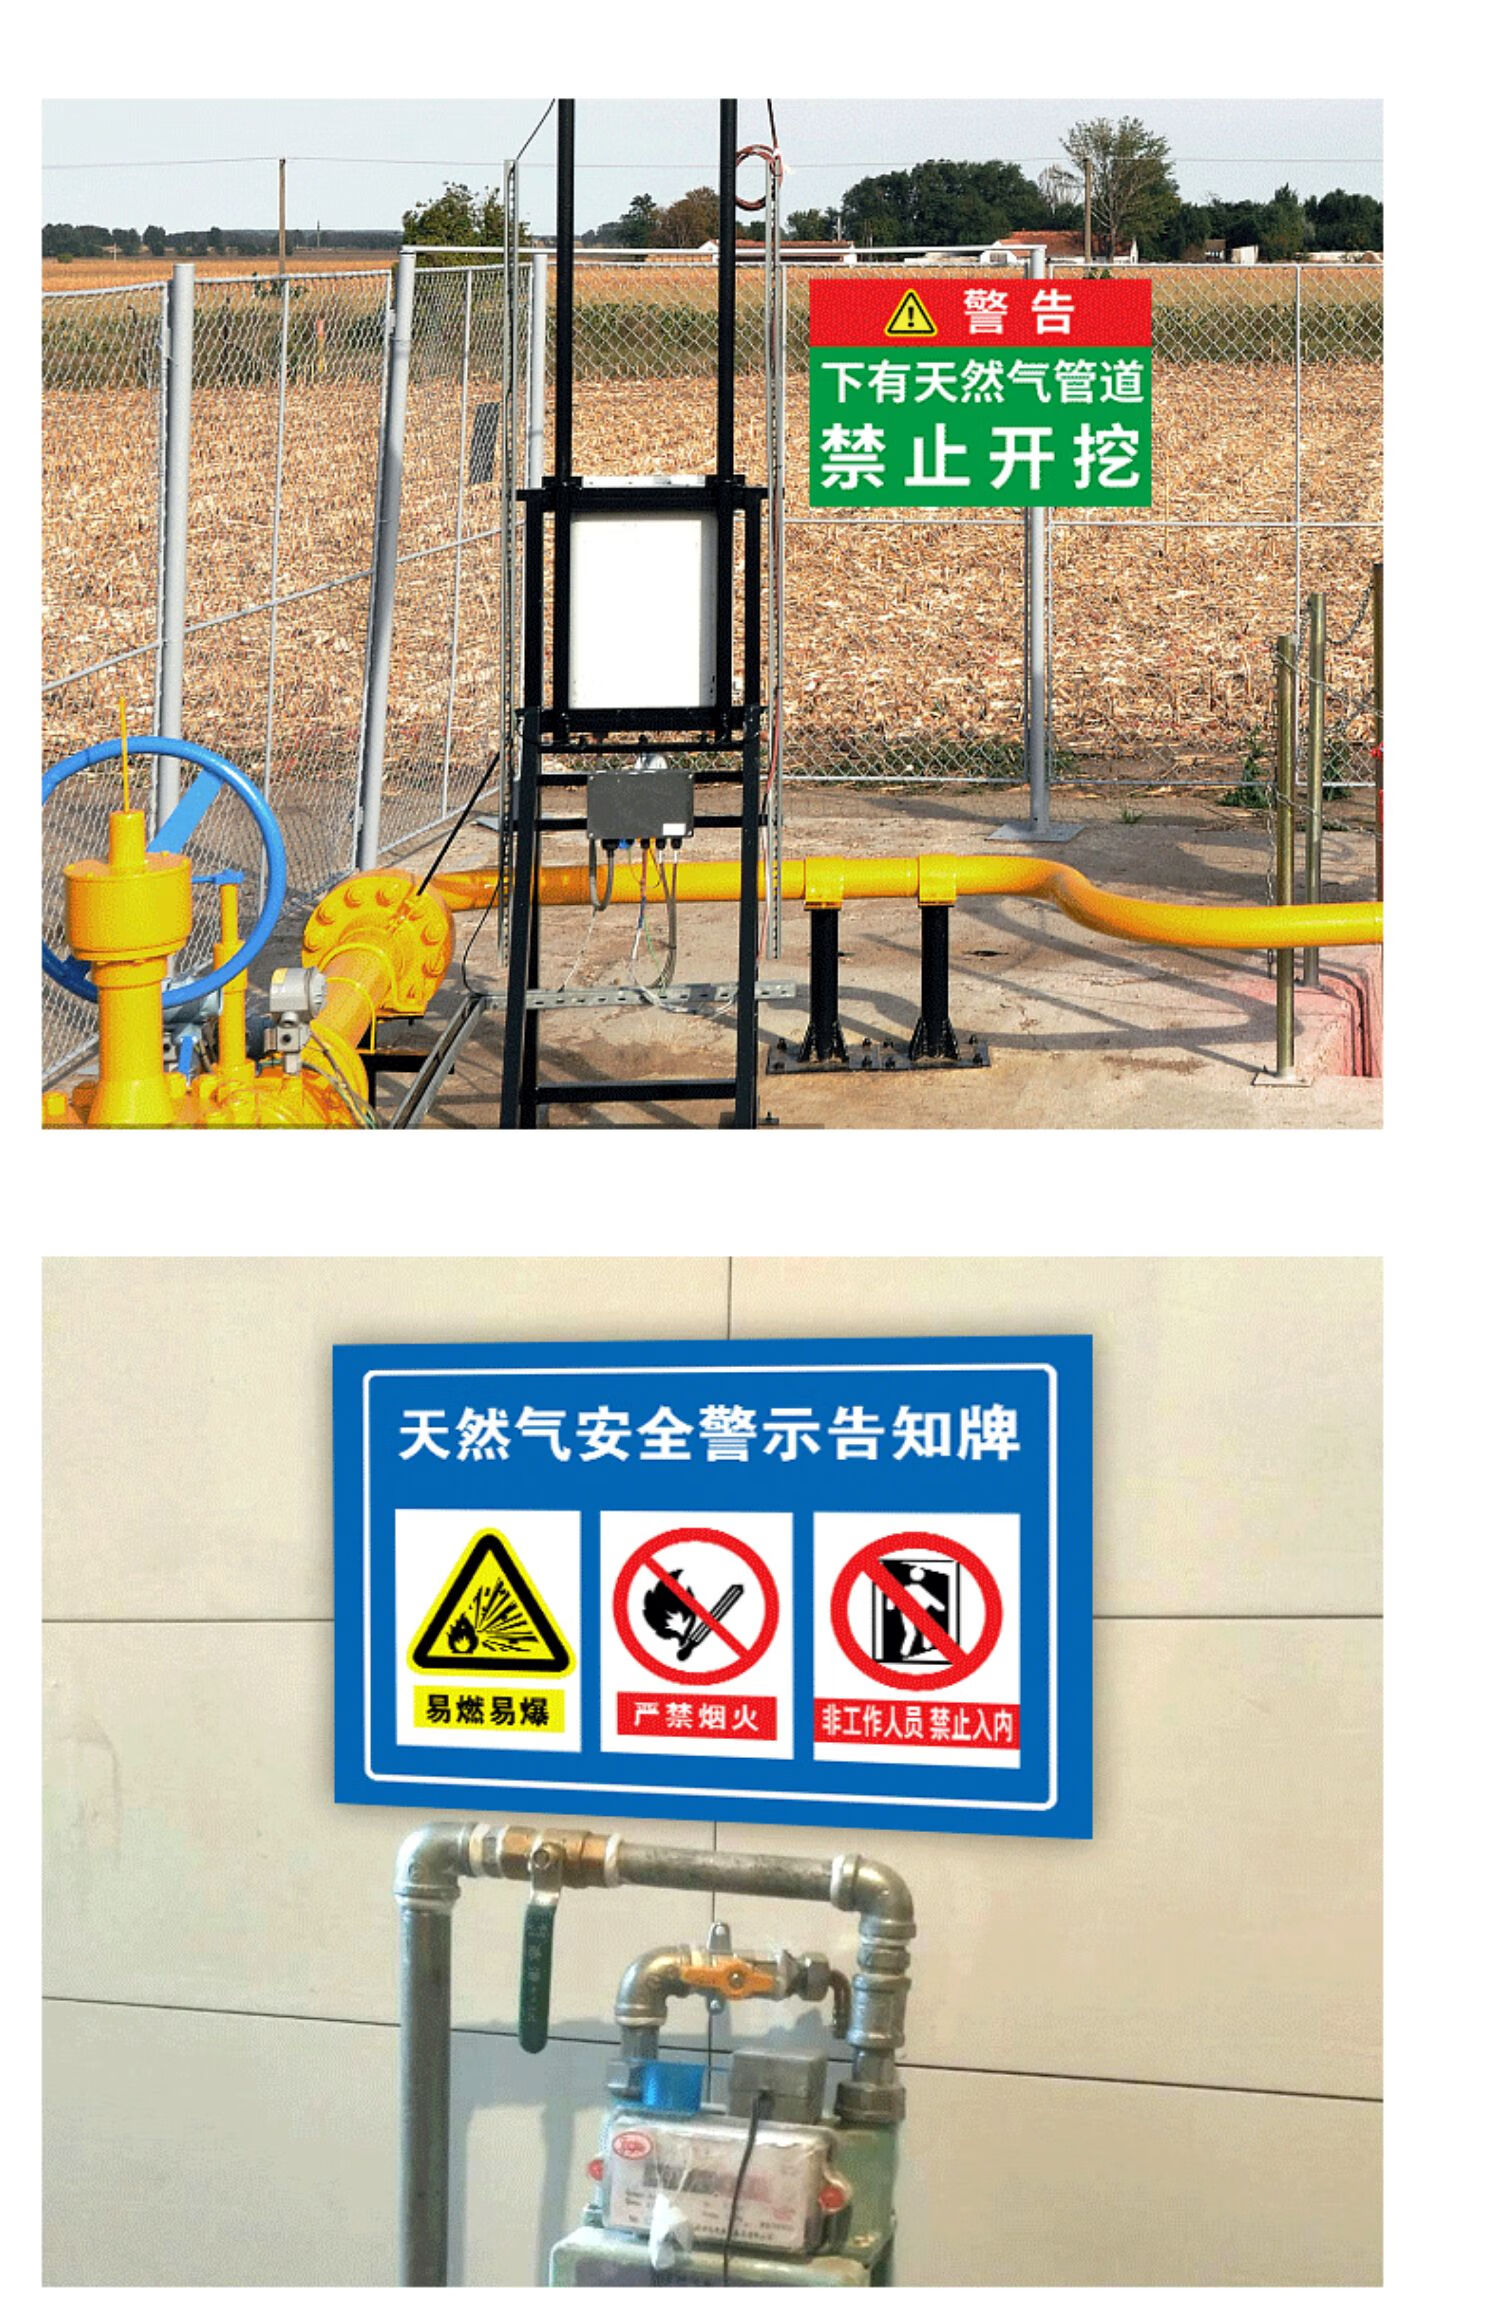 煤气区域警示标志图片